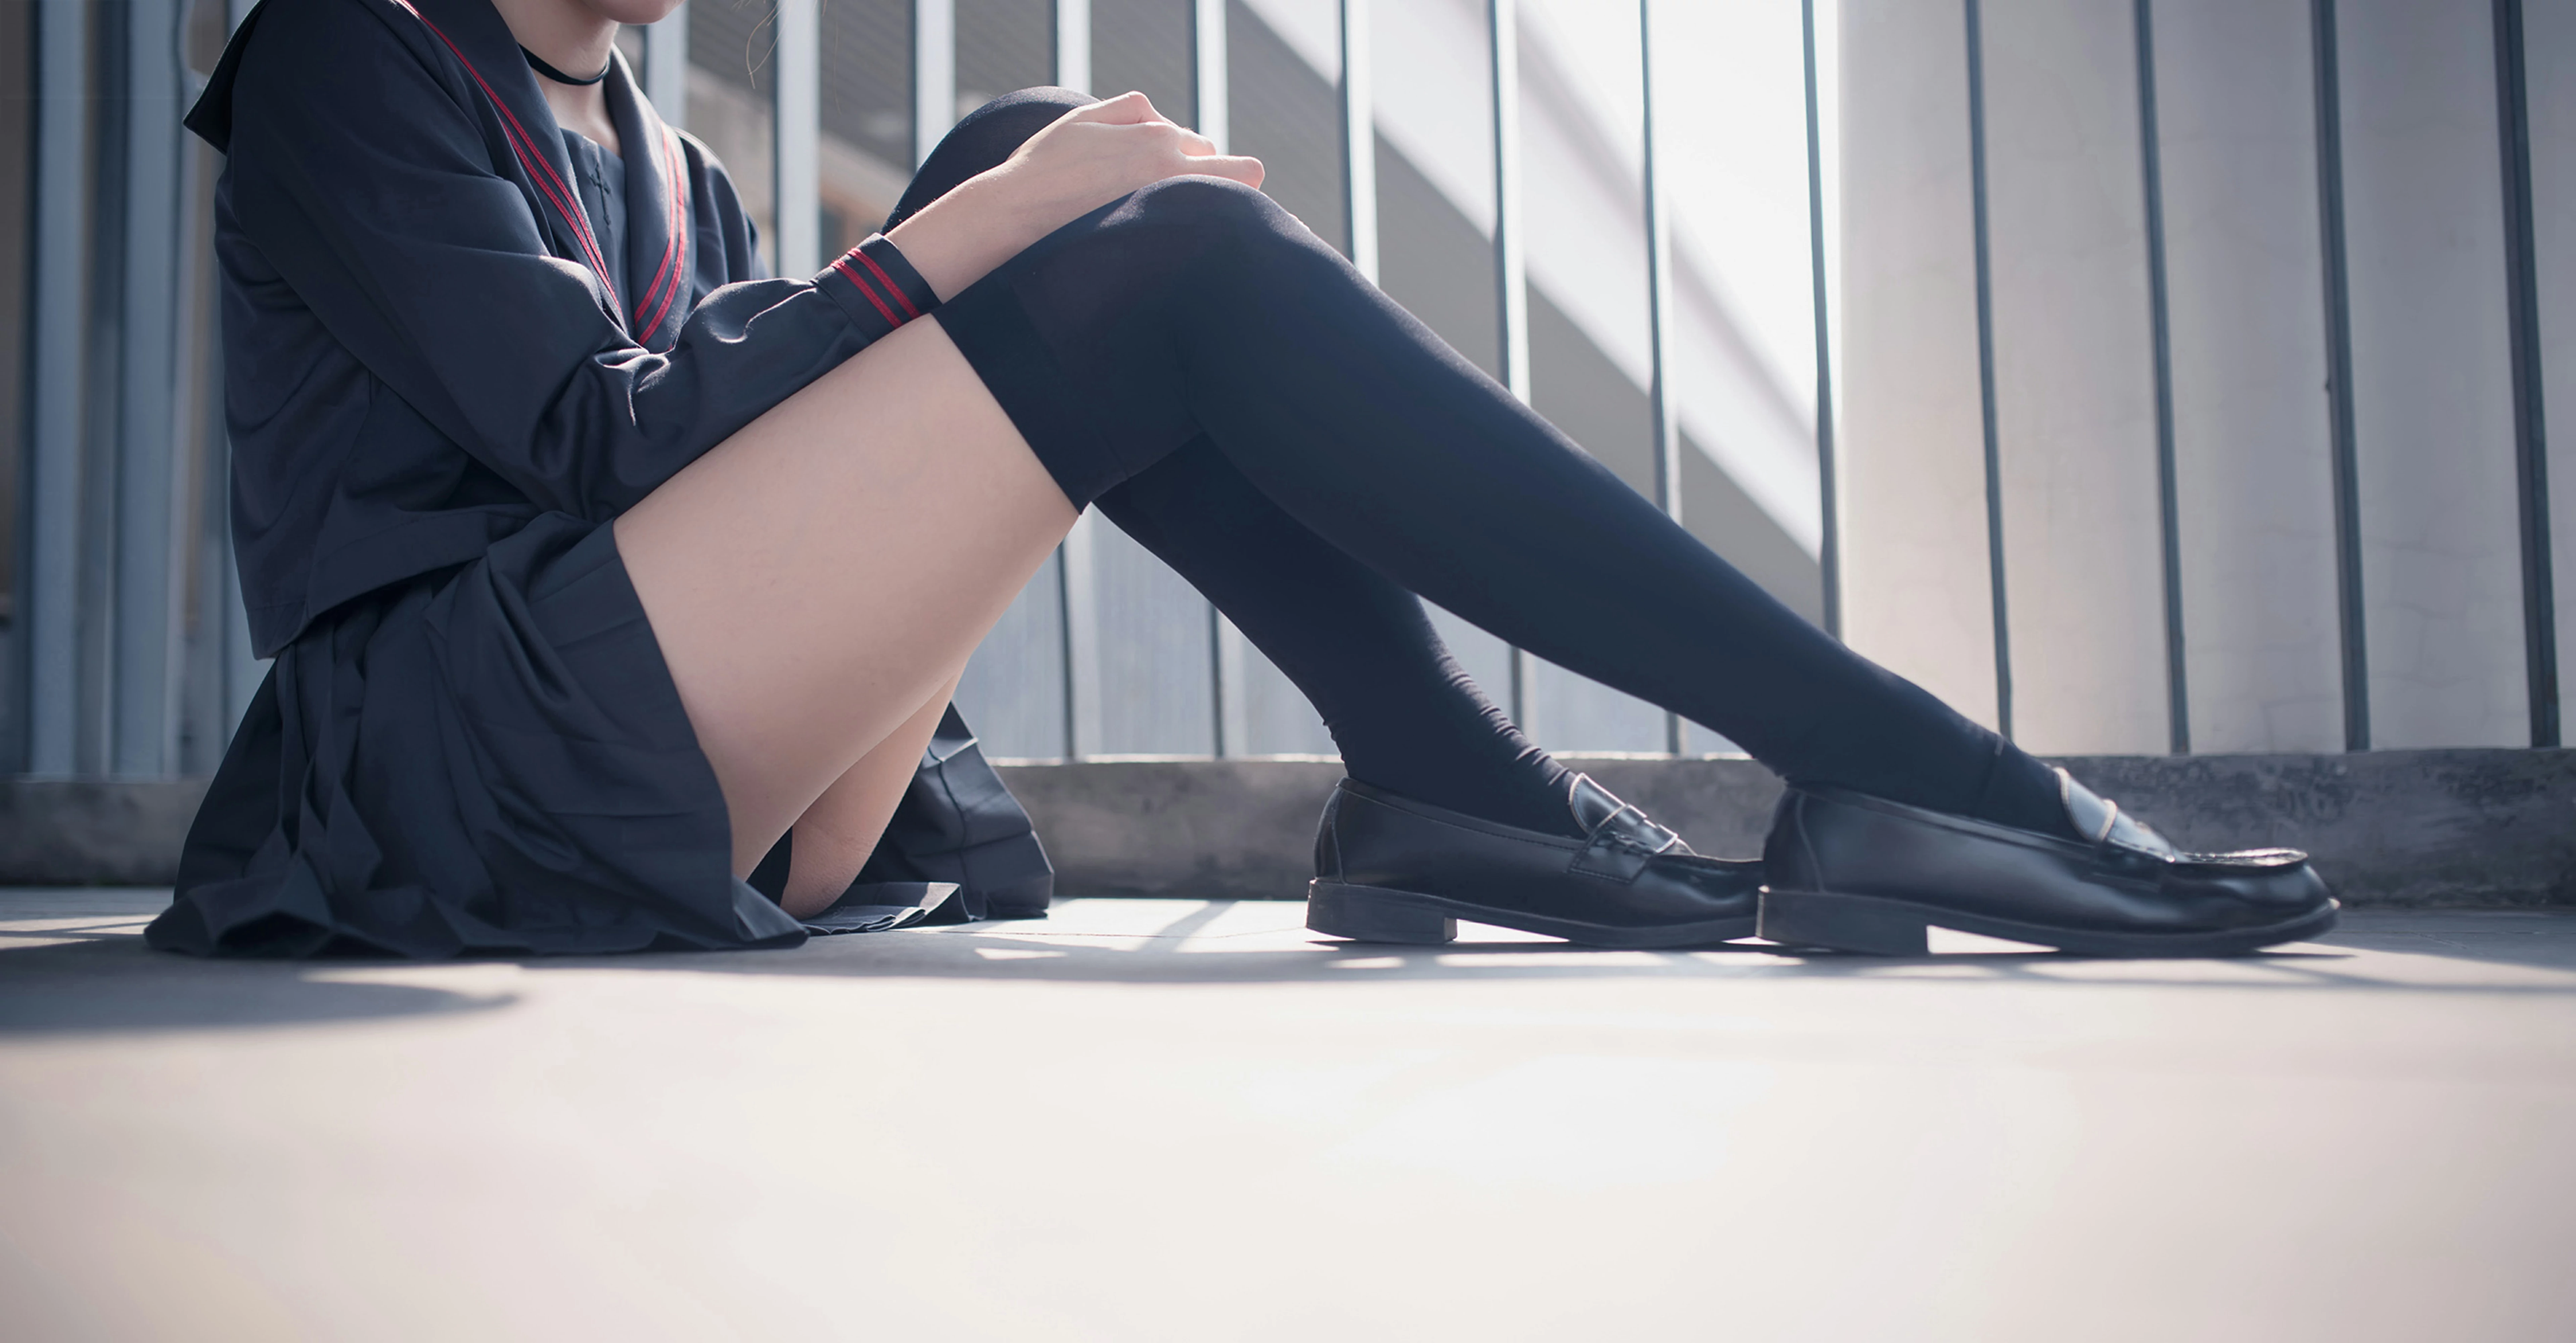 [风之领域]NO.120 性感学妹小萝莉 黑色情趣高中女生制服与黑色短裙加黑色丝袜美腿私房写真集,